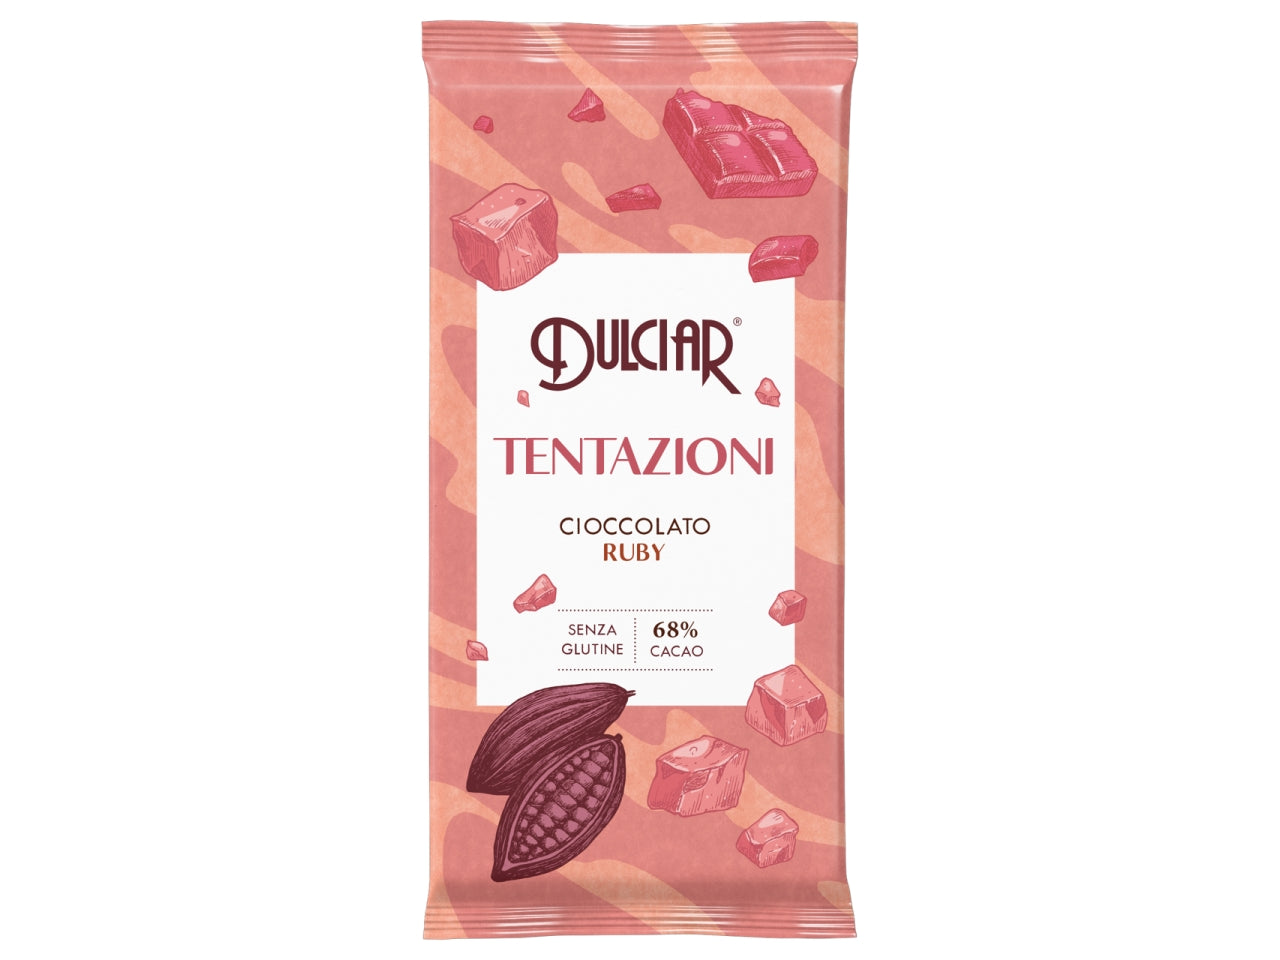 Tavoletta tentazioni cioccolato ruby 80g